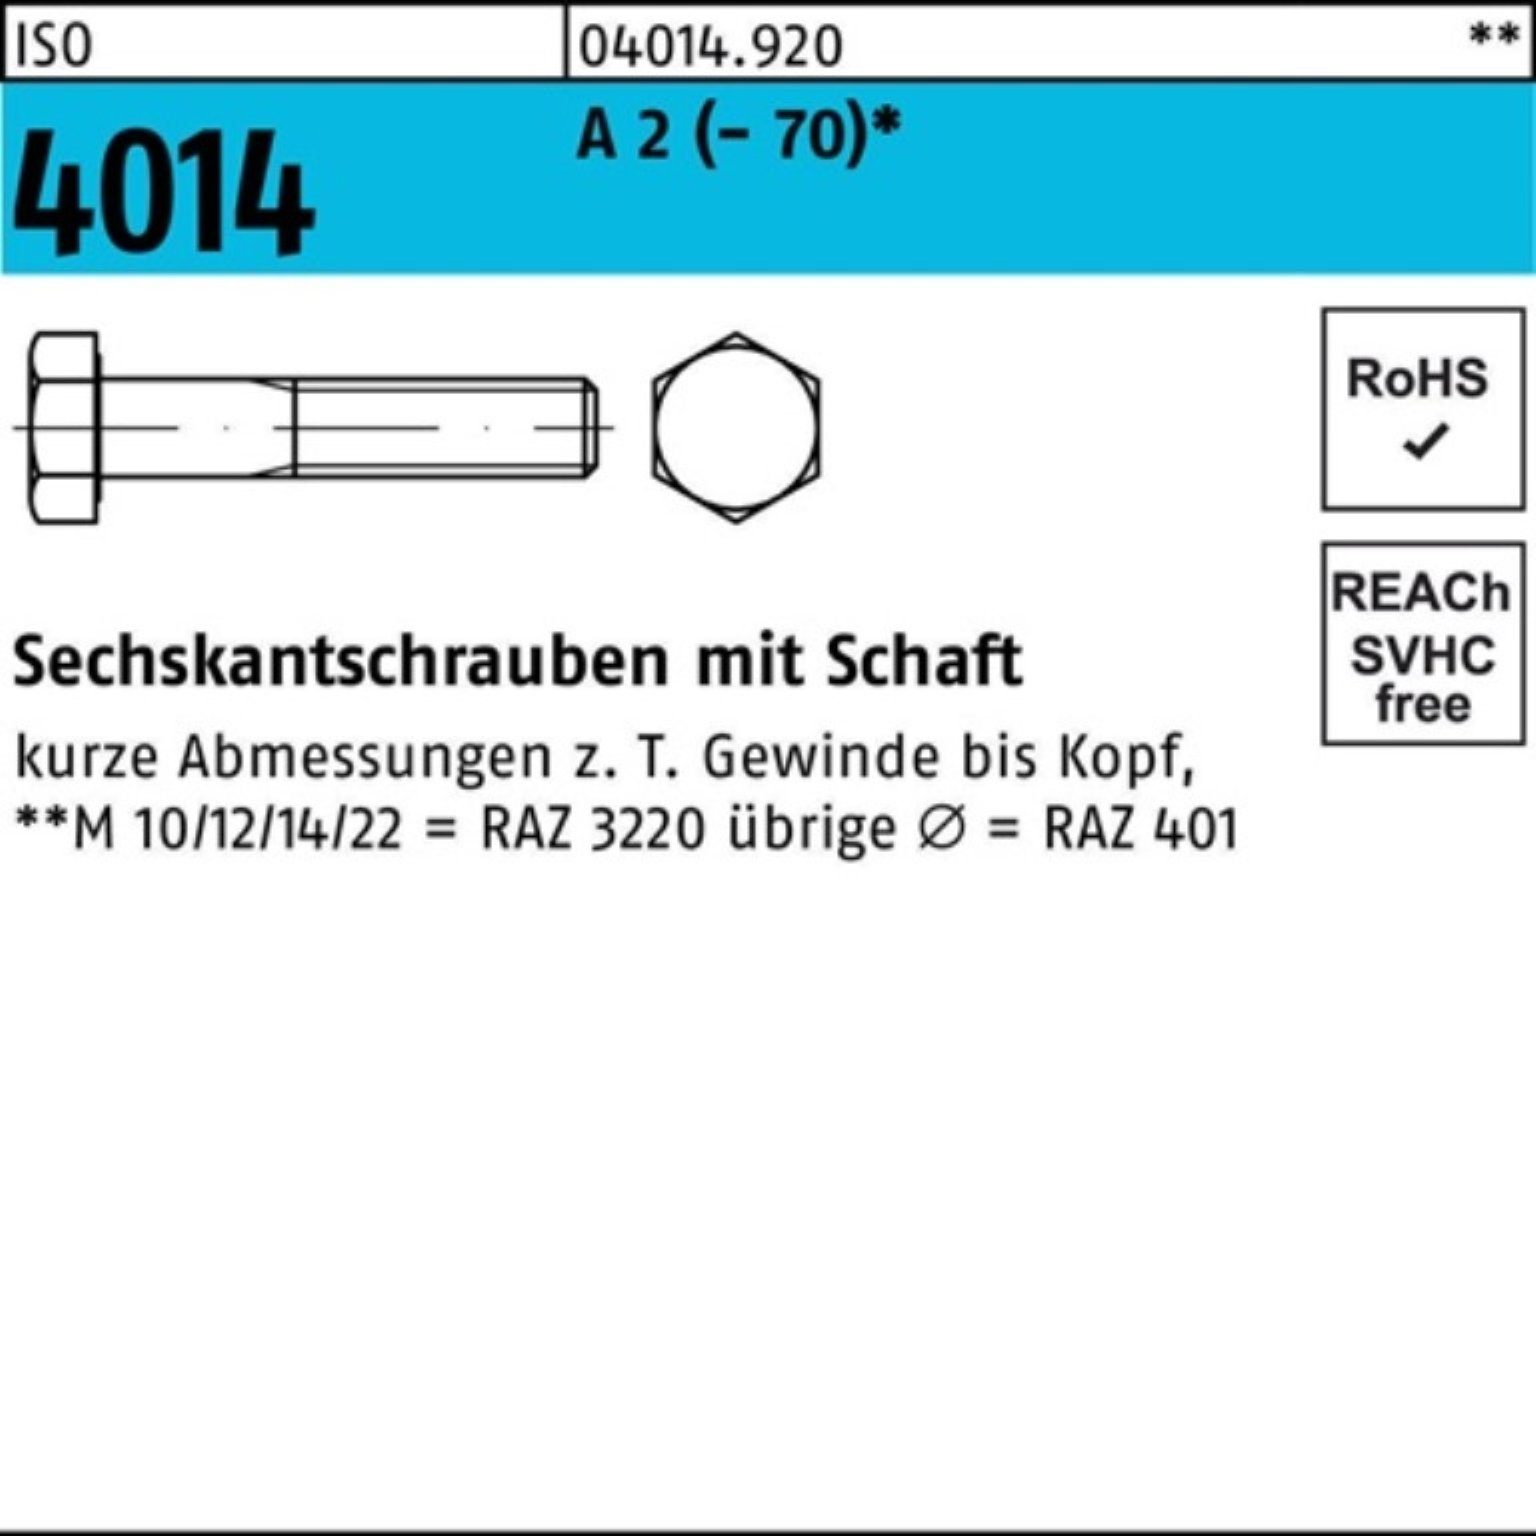 Bufab Sechskantschraube 100er Pack Sechskantschraube A 4014 140 St 1 M20x Schaft ISO 2 (70)